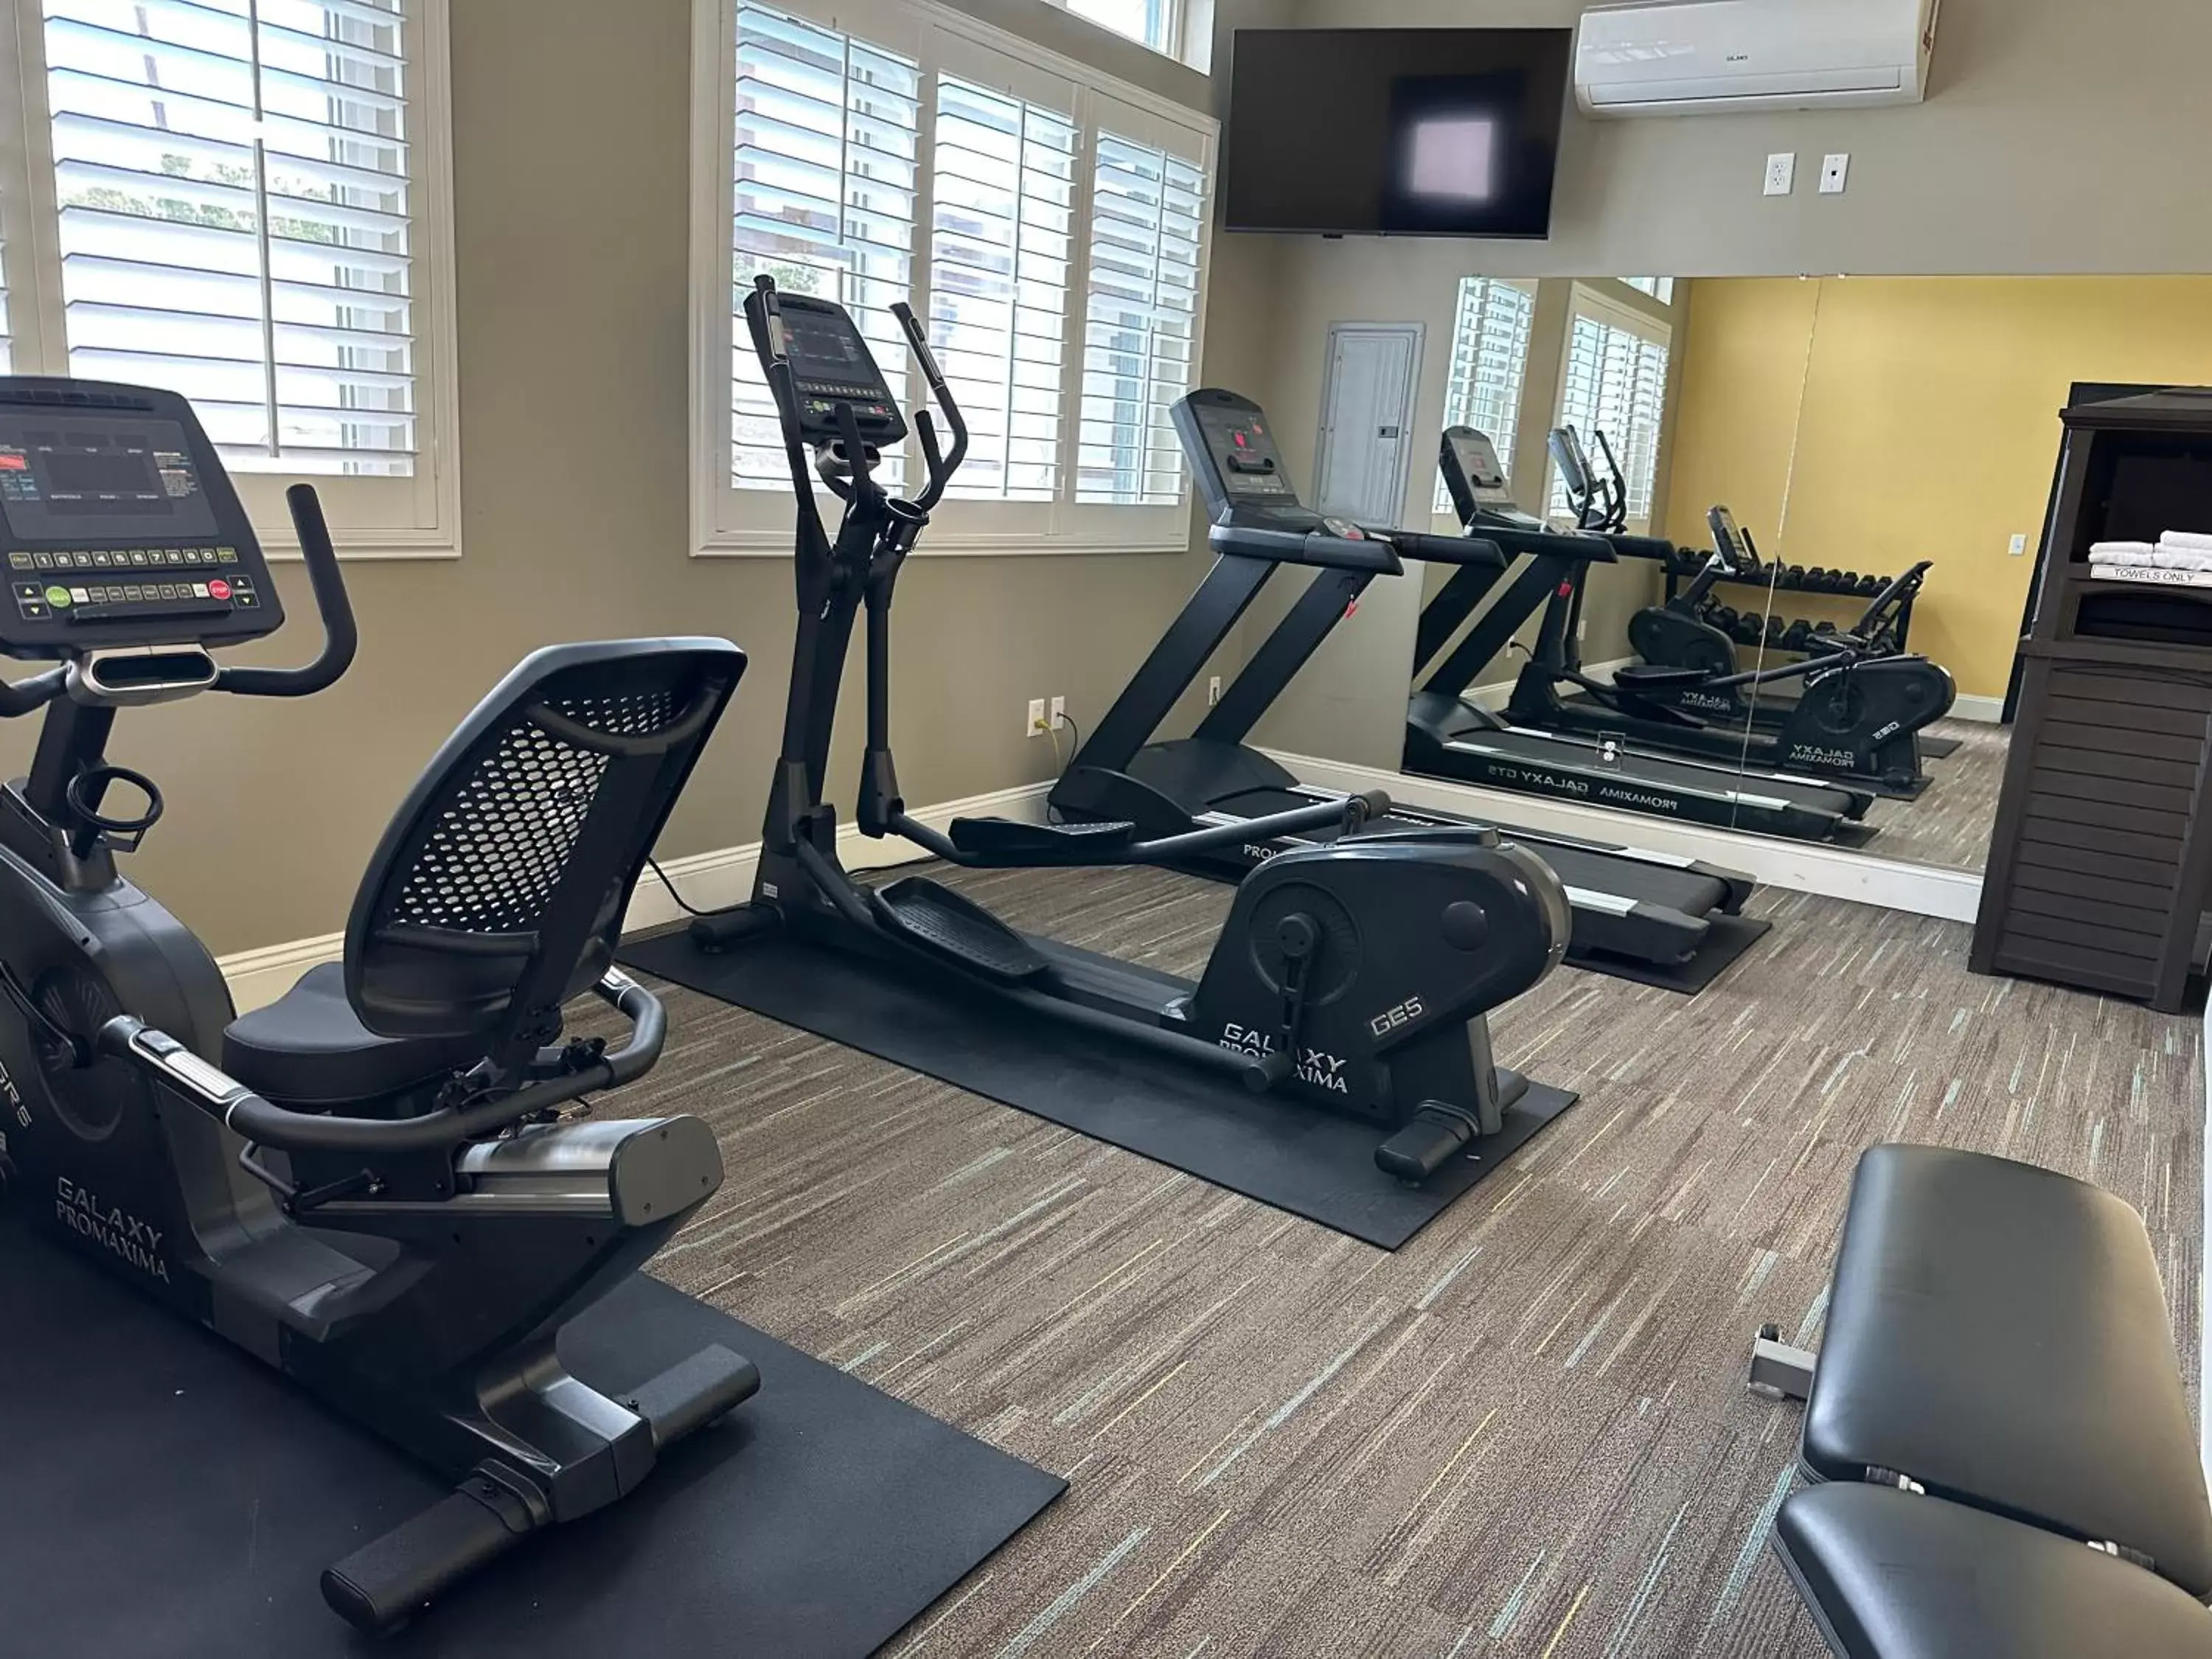 Fitness centre/facilities, Fitness Center/Facilities in Best Western Inn Santa Clara